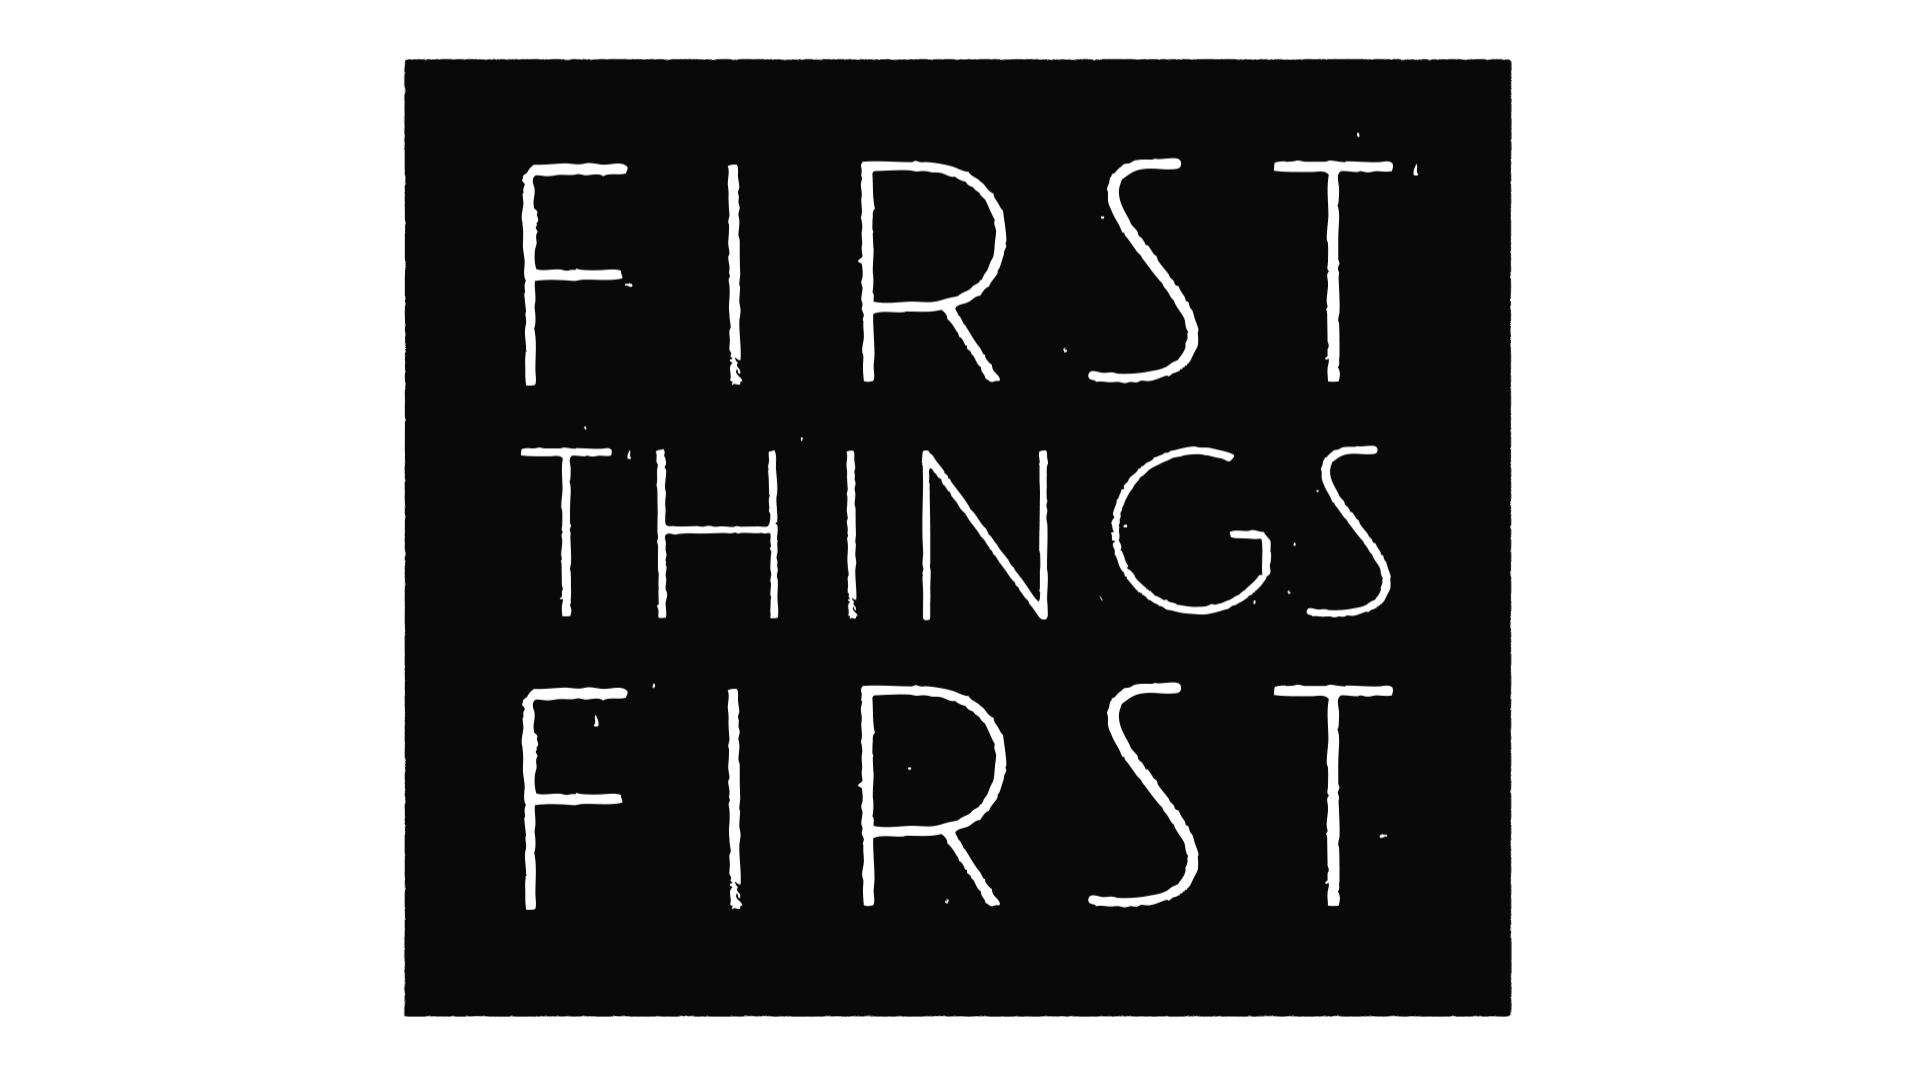 This is the first thing. First thing. First things first. First things first ЕГЭ. First things first как переводится.